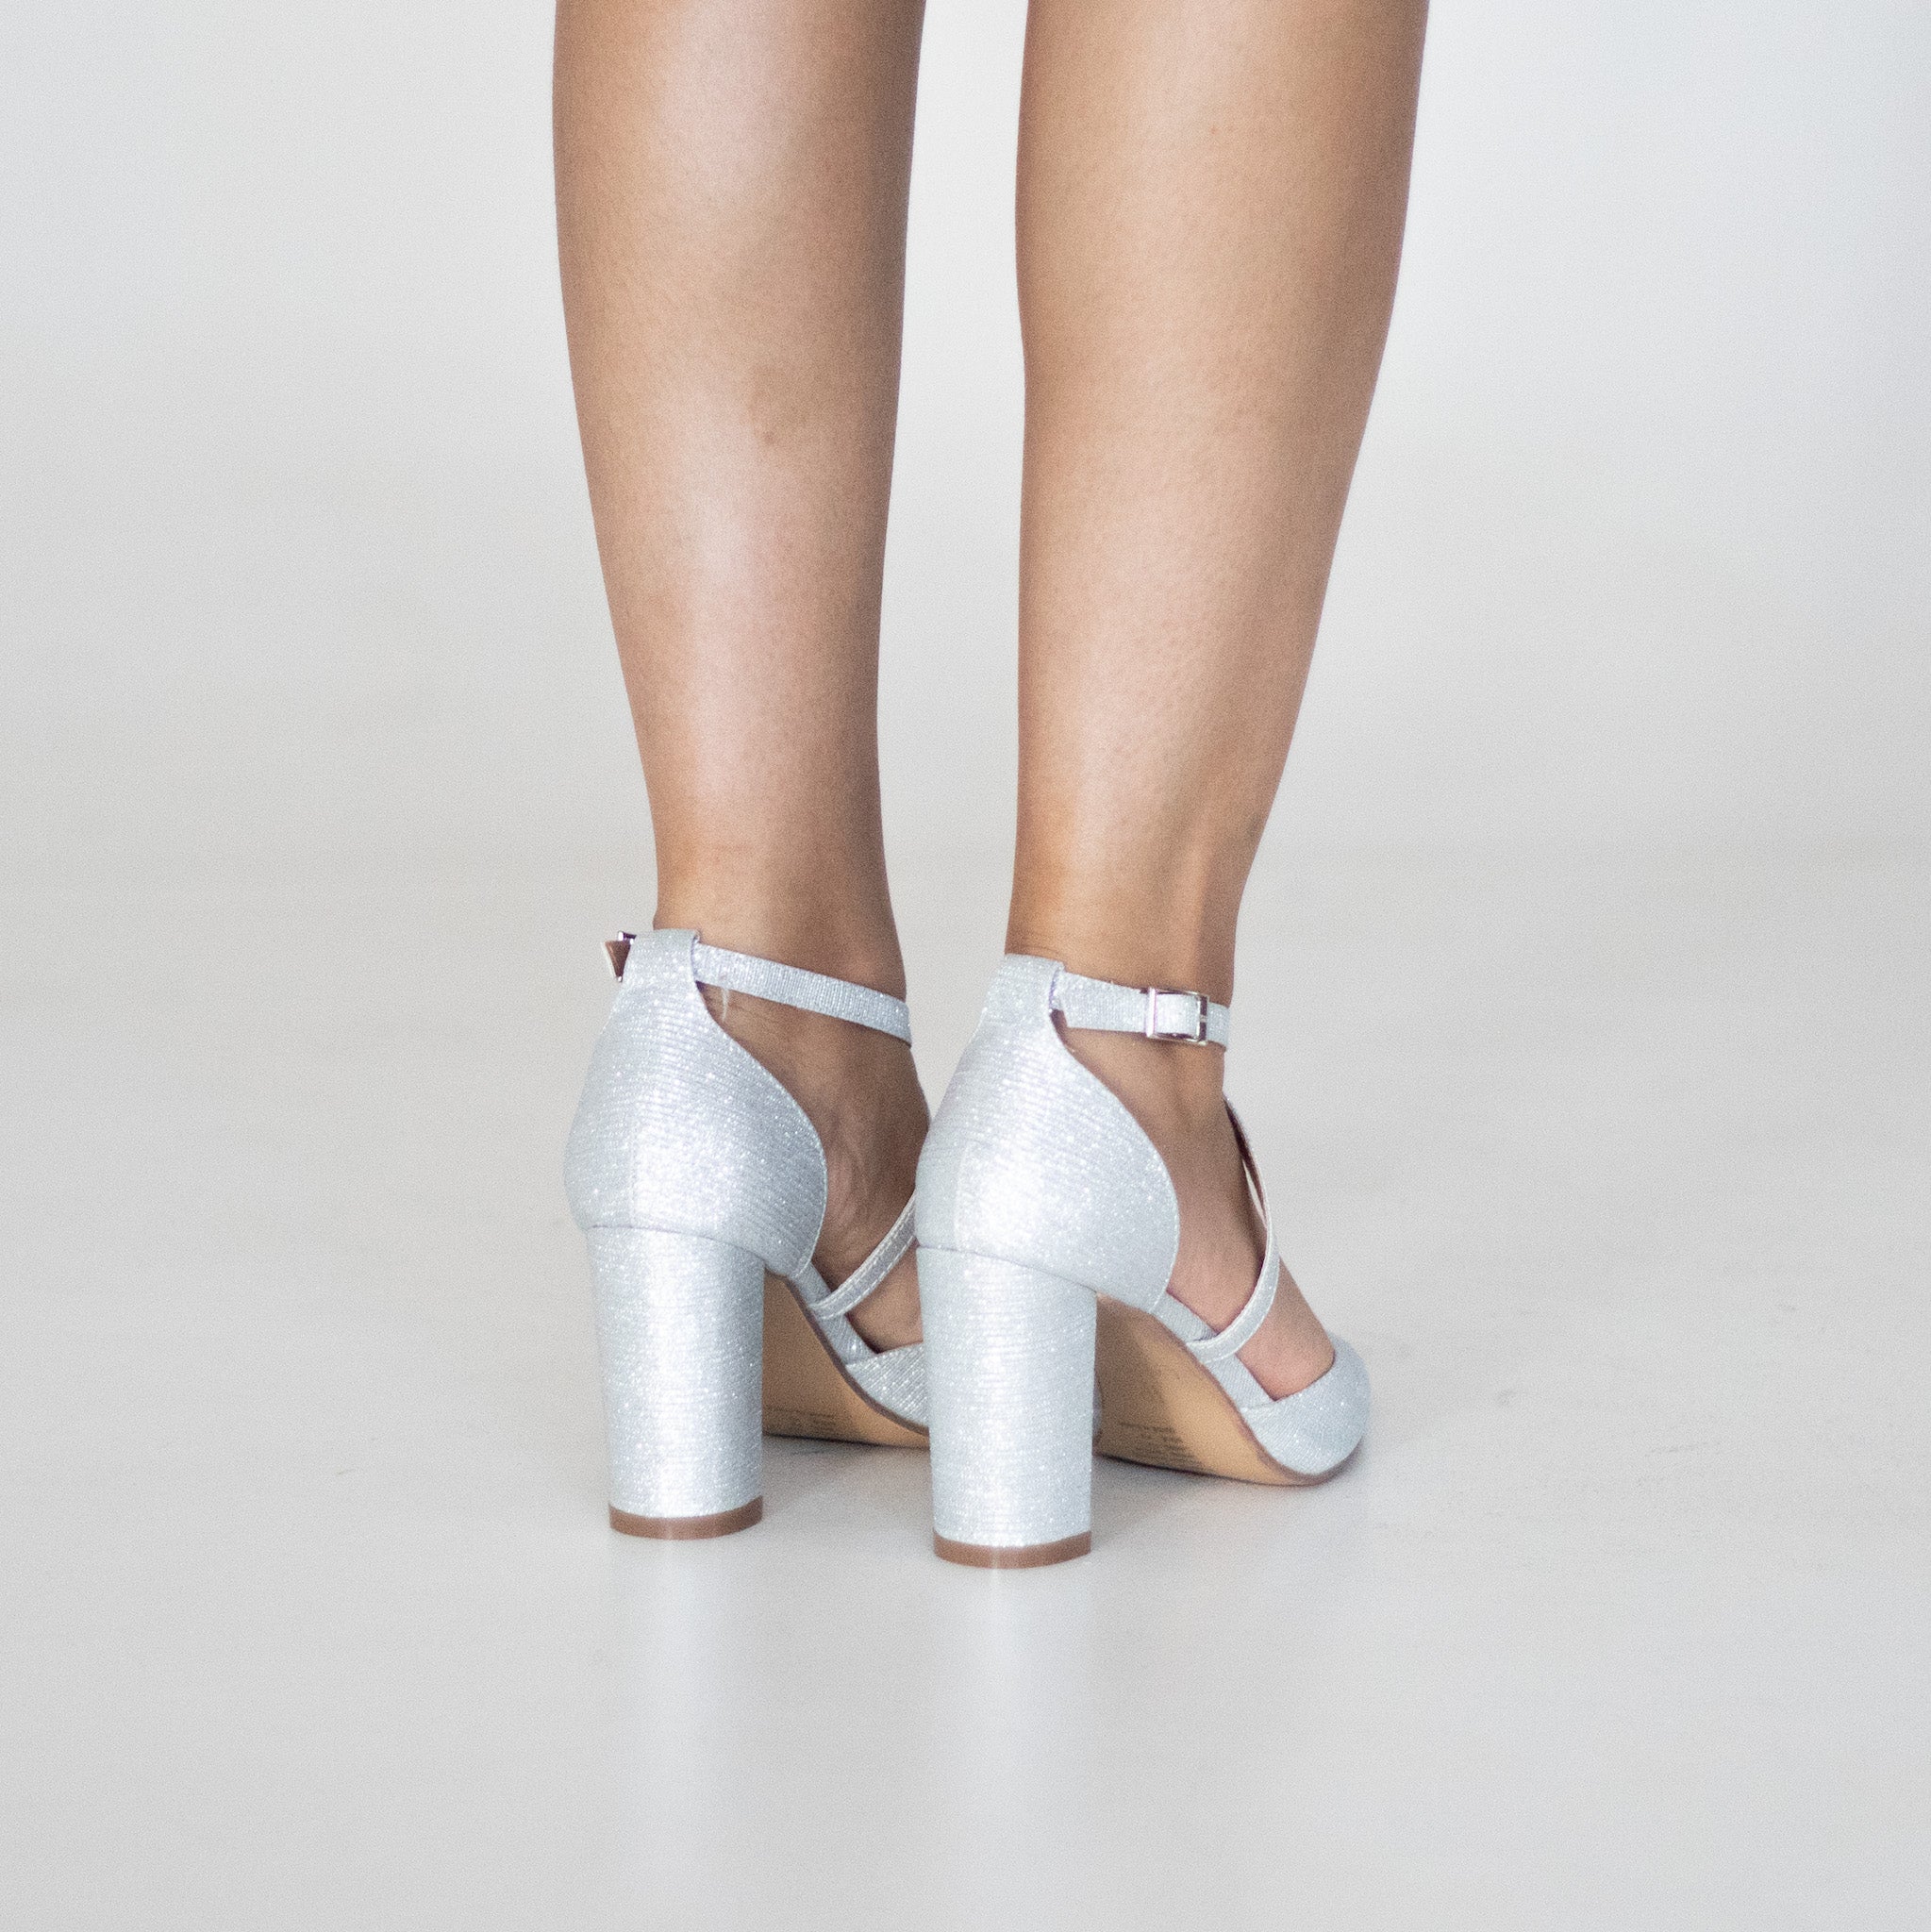 Silver cross-belts open waist SHIMMER 8.5cm block heel femi